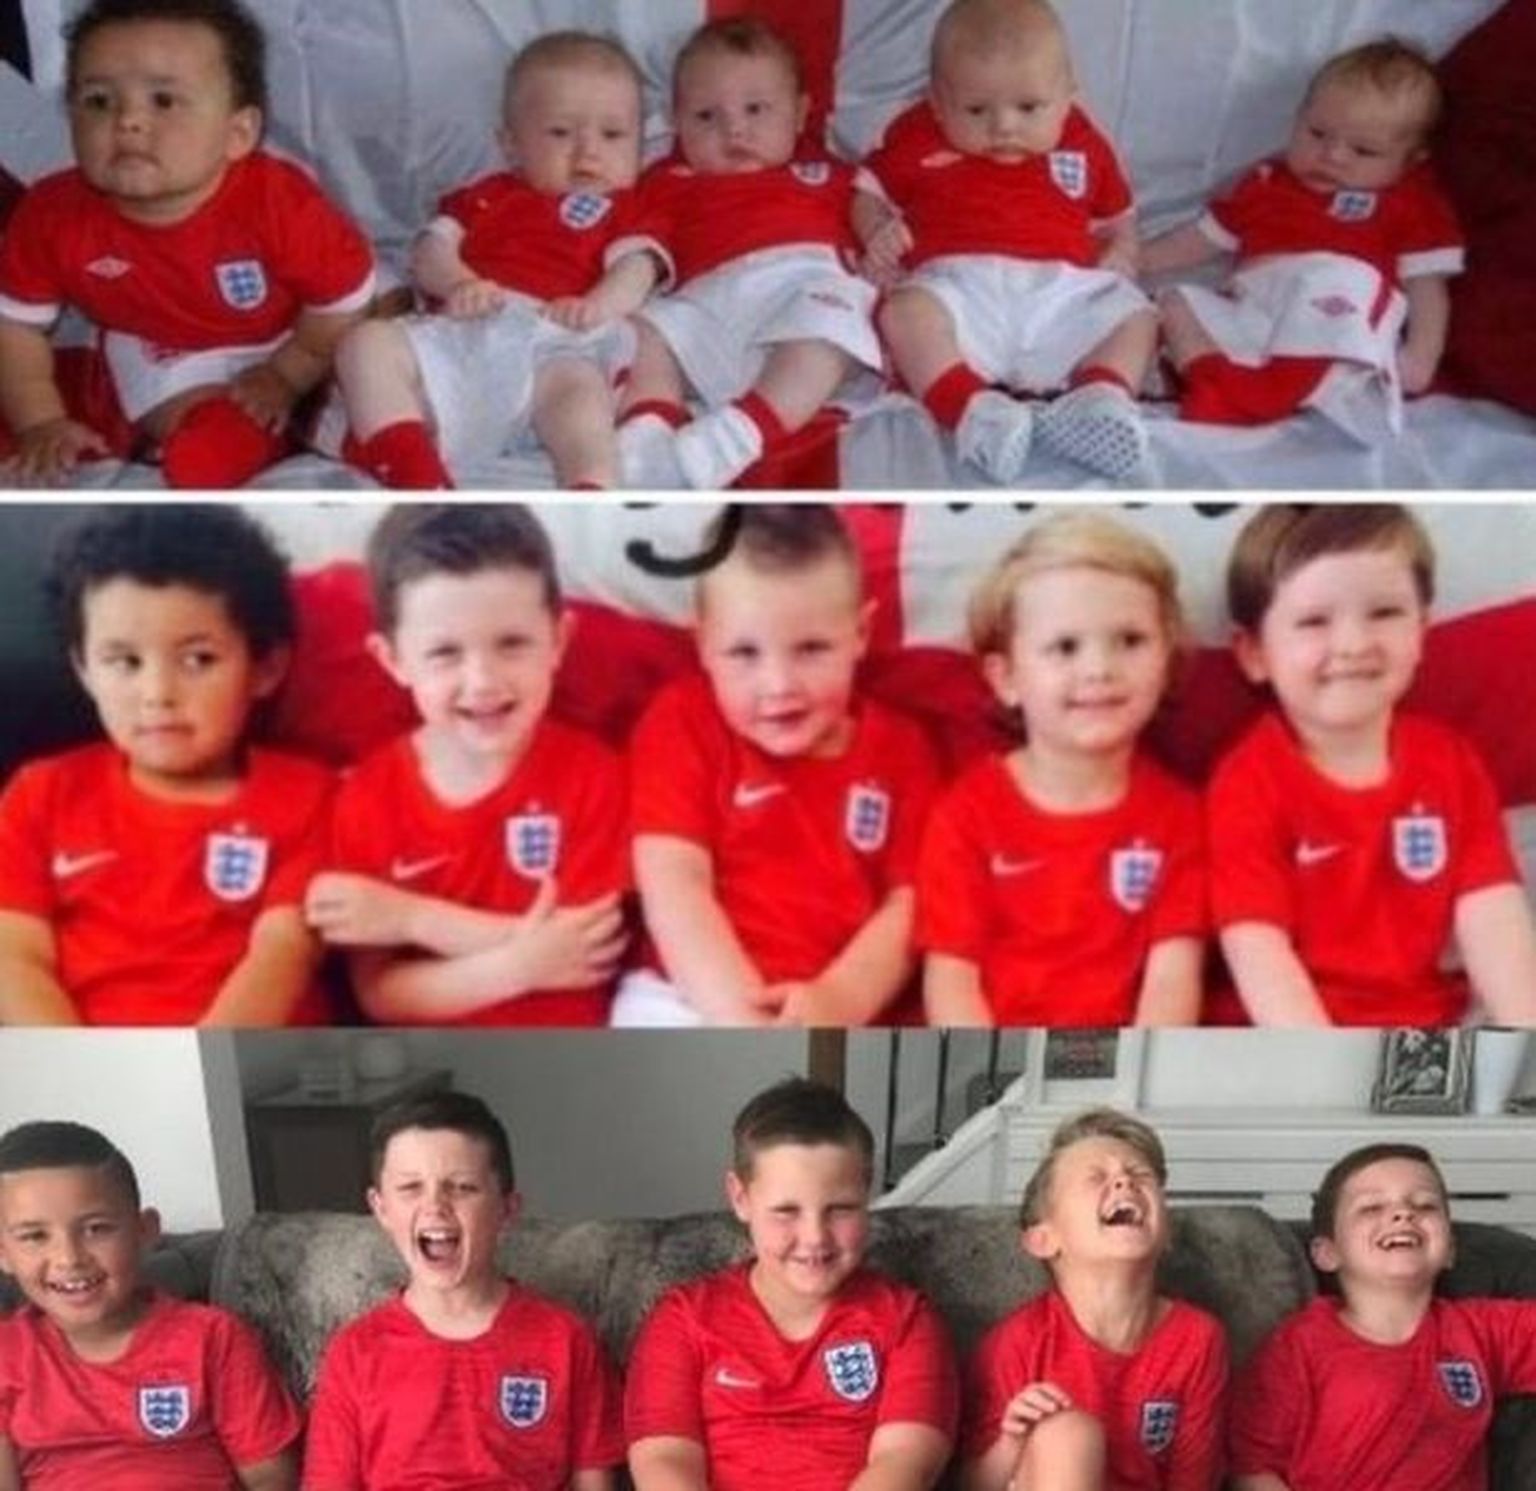 Noored inglise jalgpallifännid